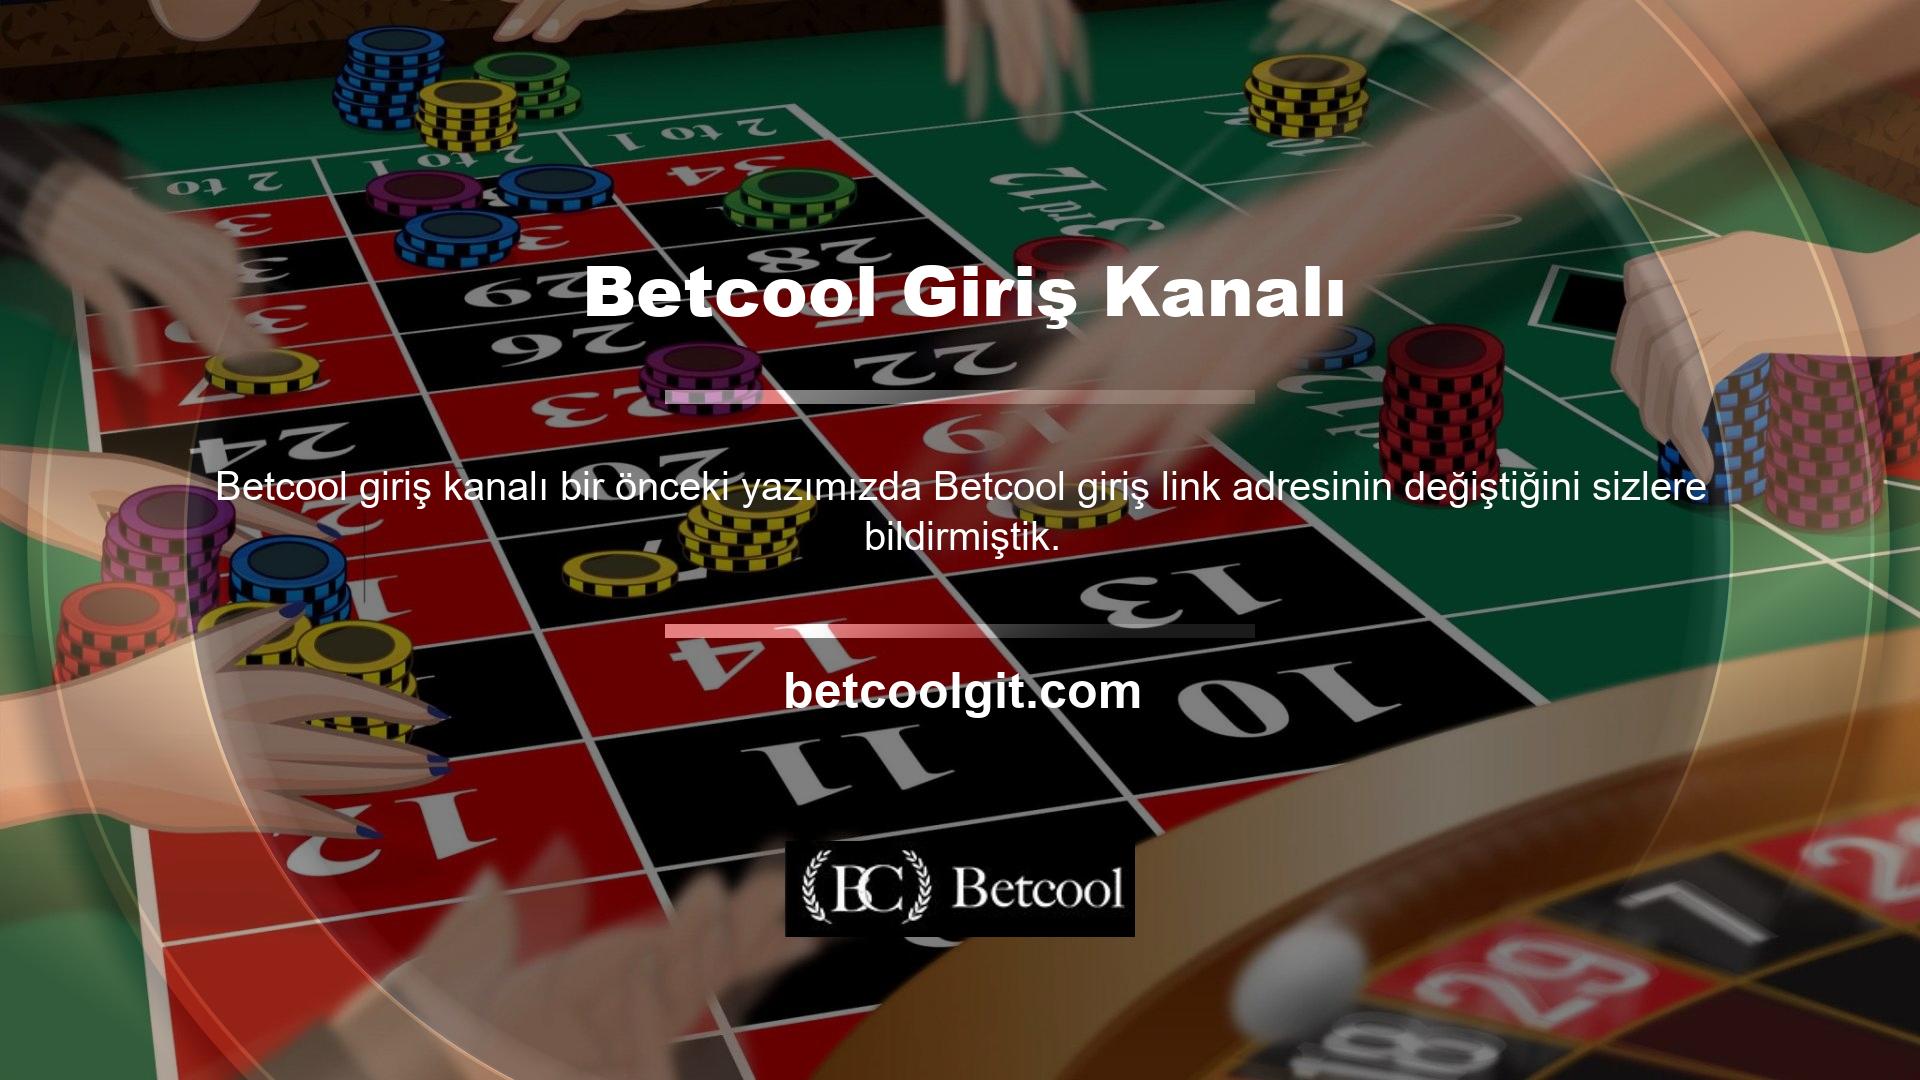 Artık Betcool web sitemizdeki bir link üzerinden kolayca kayıt olabilirsiniz